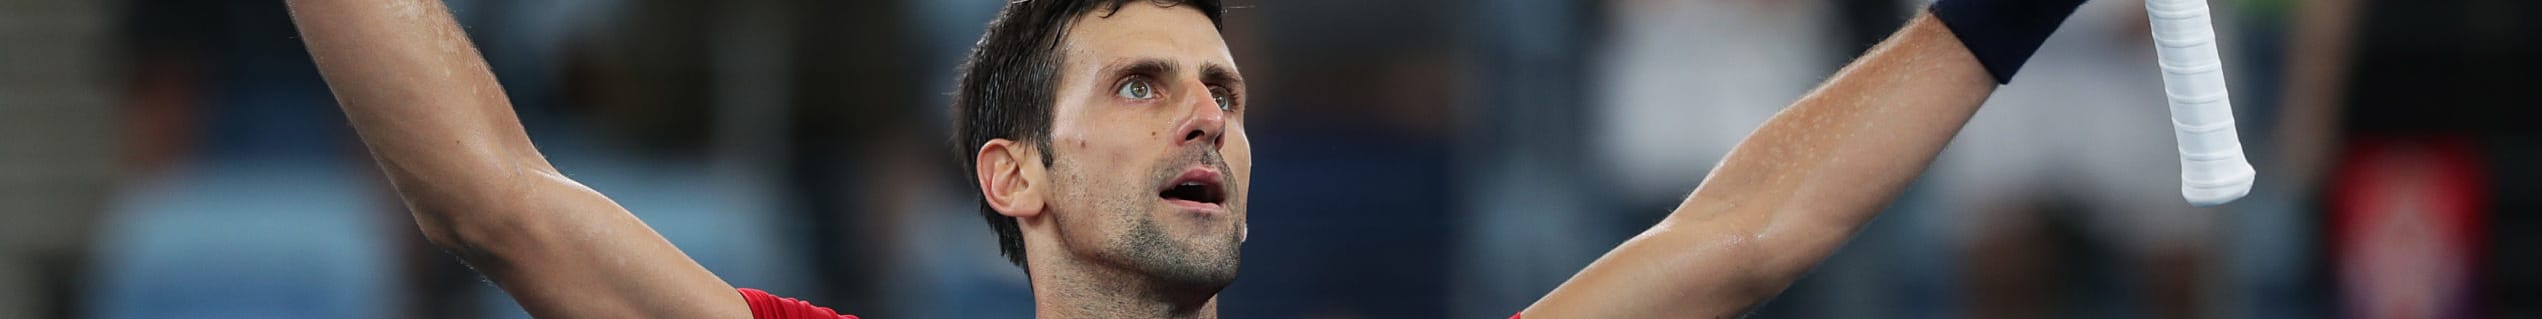 ATP Cup 2020: finale tra Serbia e Spagna, decideranno tutto Djokovic e Nadal